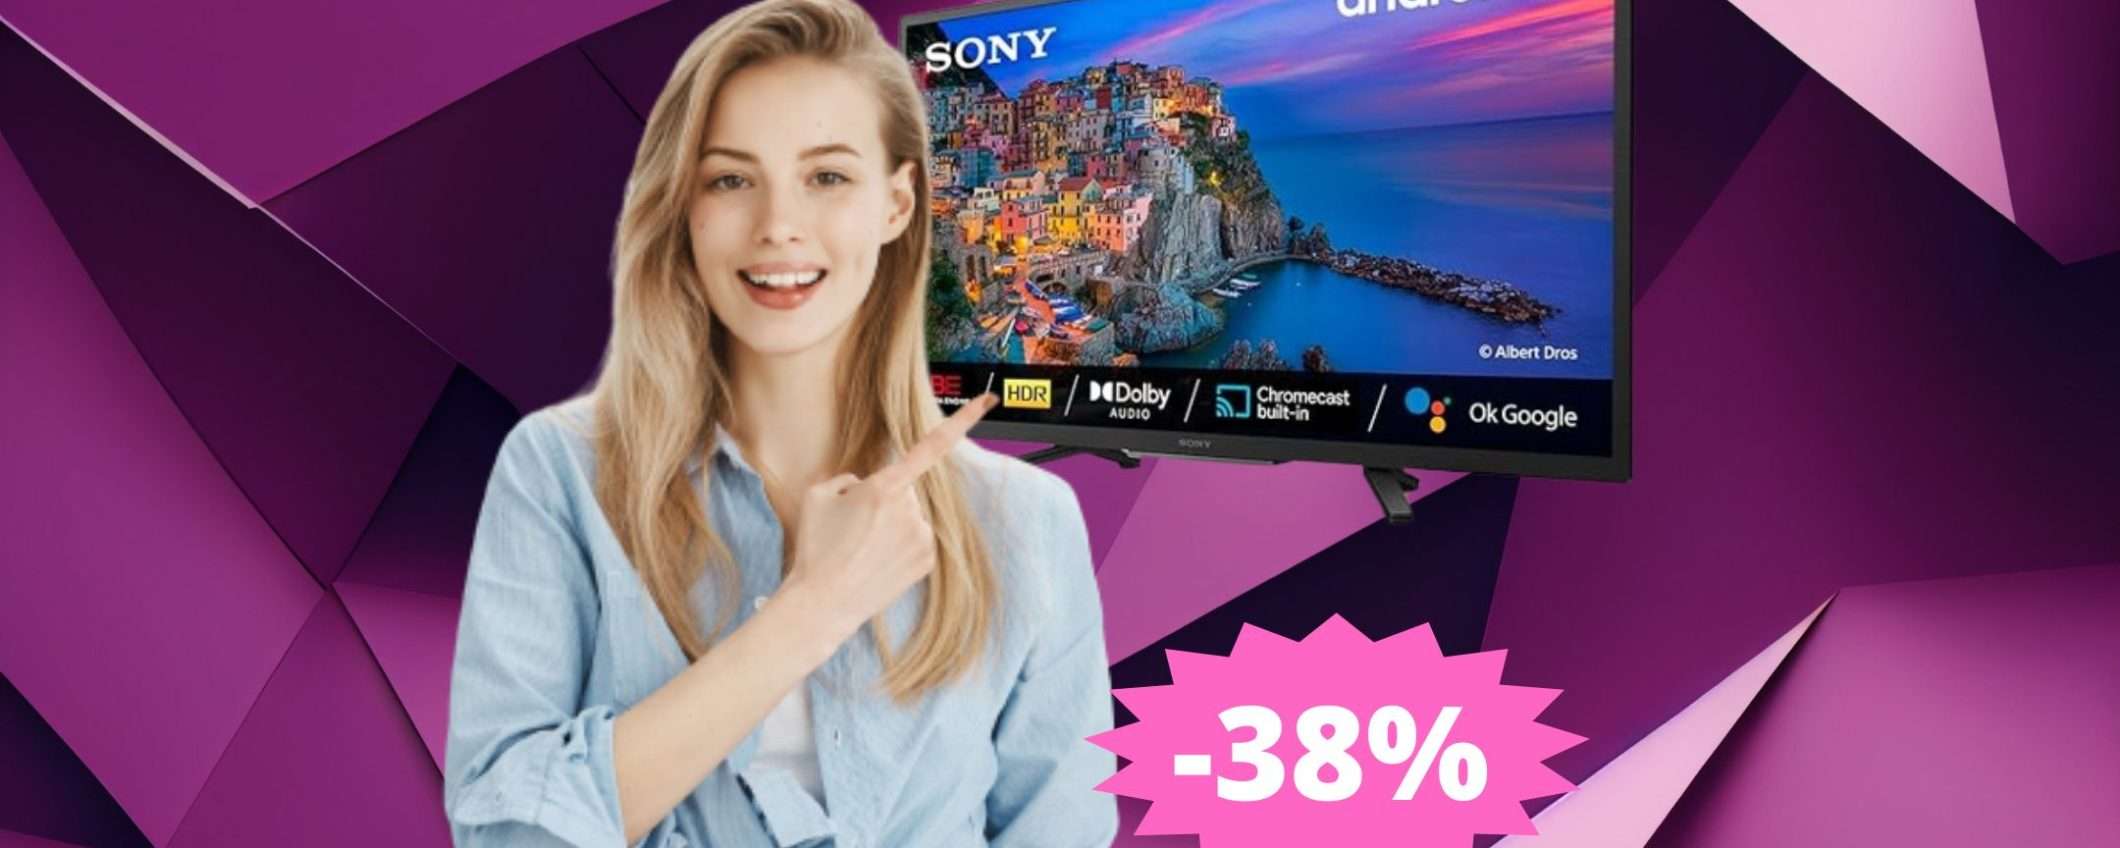 Smart TV Sony BRAVIA: un'OCCASIONE imperdibile (-38%)